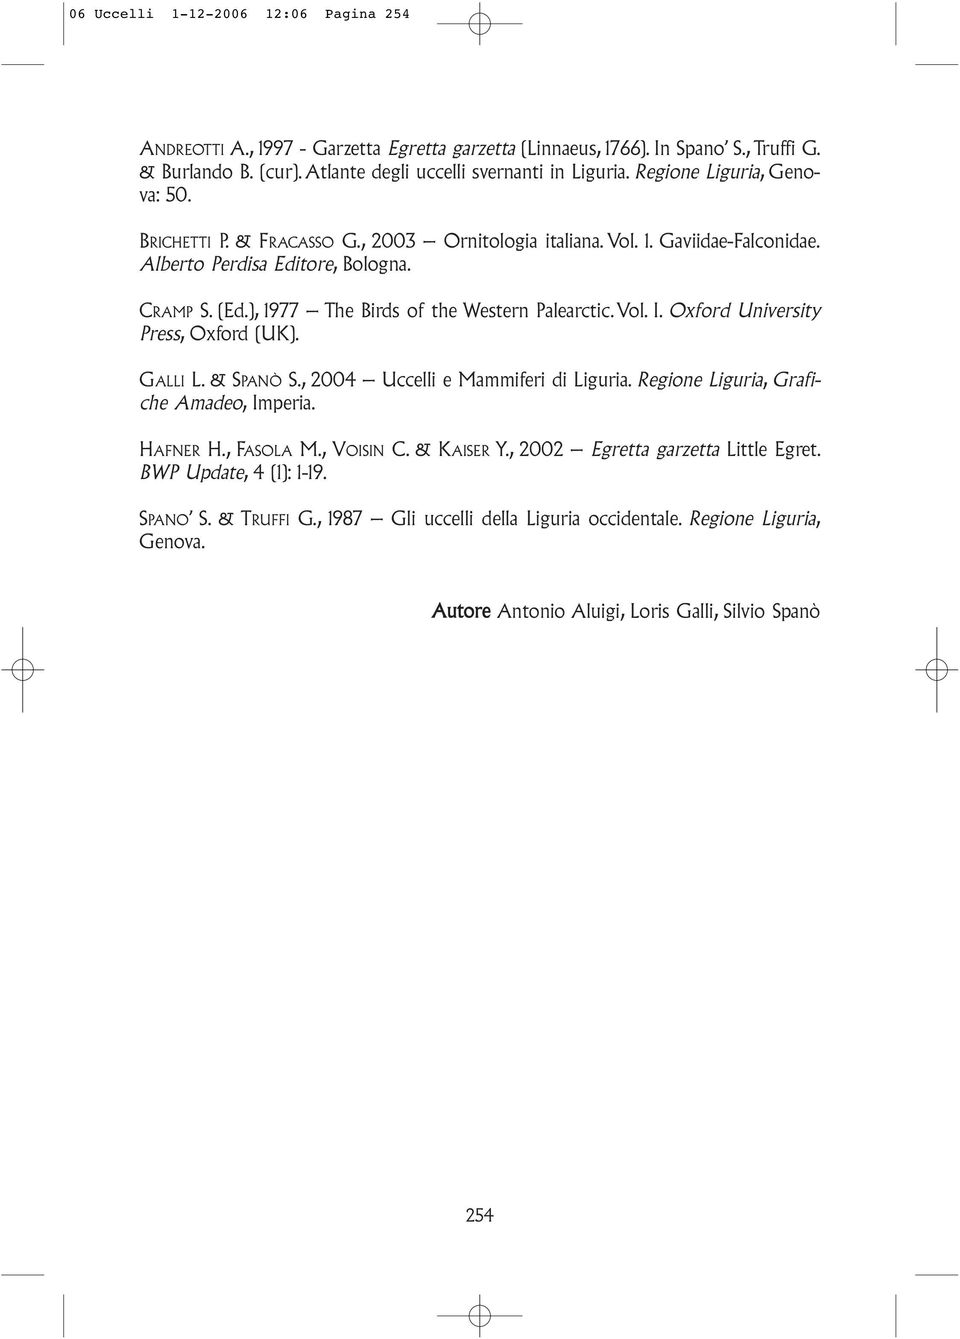 ), 1977 The Birds of the Western Palearctic. Vol. I. Oxford University Press, Oxford (UK). GALLI L. & SPANÒ S., 2004 Uccelli e Mammiferi di Liguria. Regione Liguria, Grafiche Amadeo, Imperia.